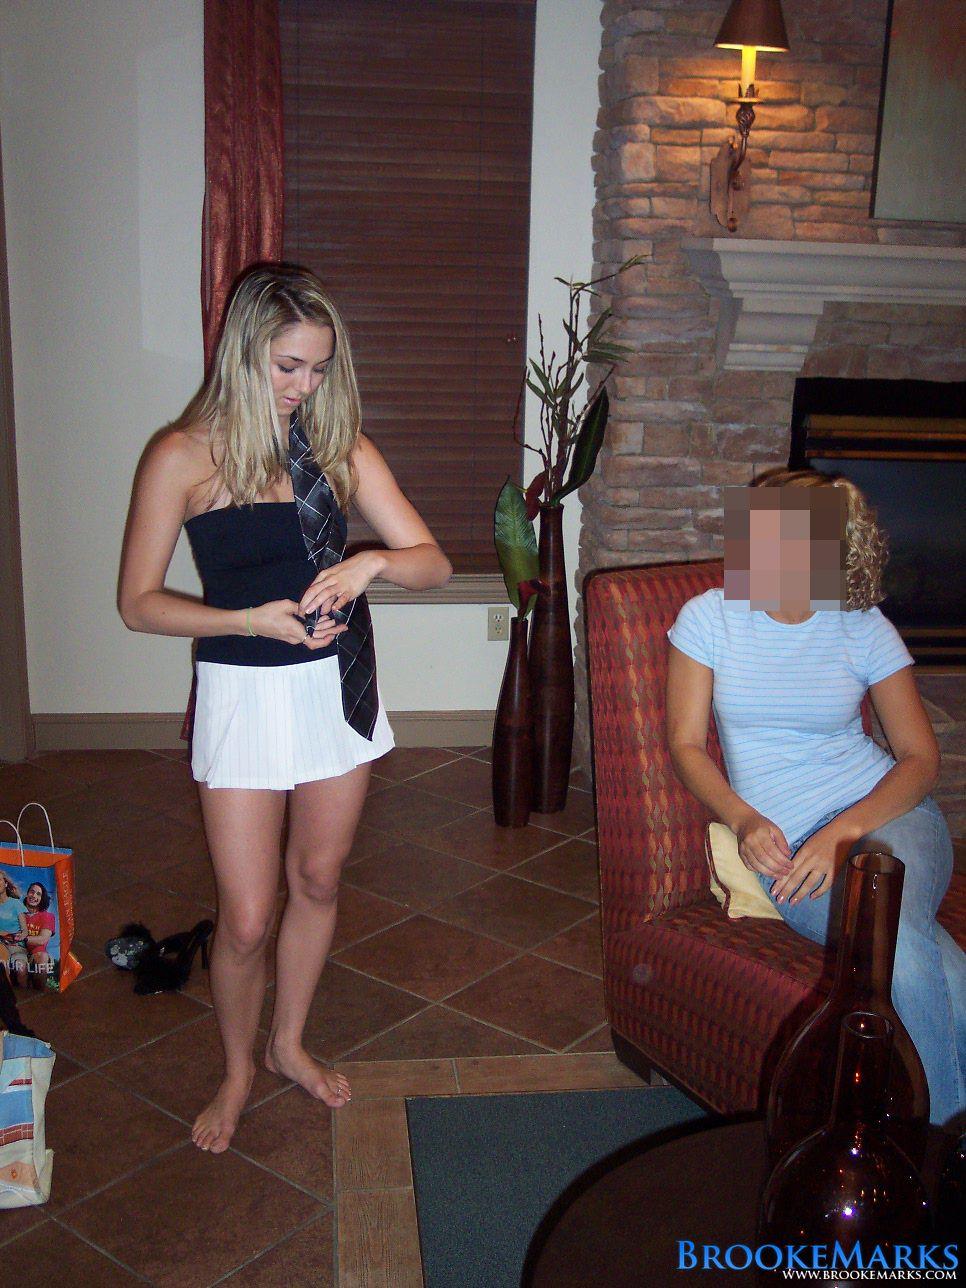 Brooke marks, une étudiante blonde, devient coquine à la maison de la sororité.
 #53553252